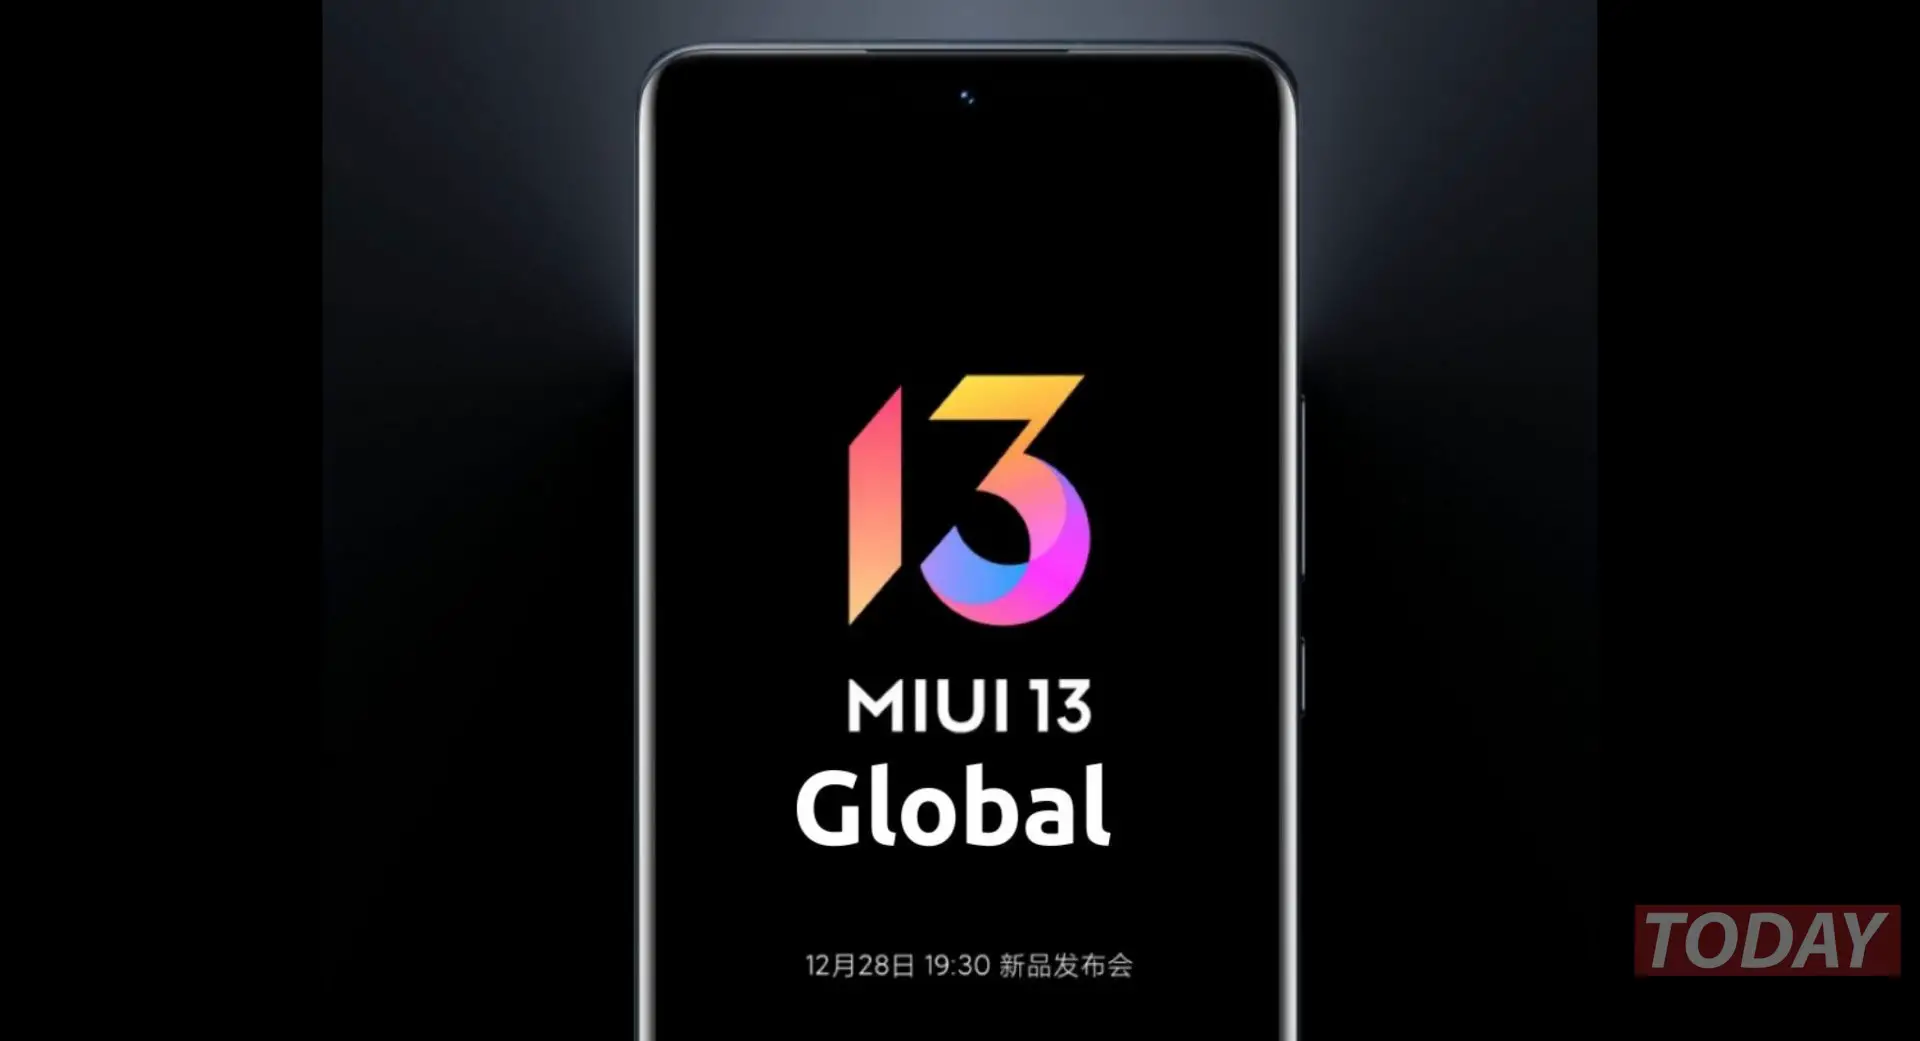 miui 13 offiziell global: Neuigkeiten und Liste der Geräte, die aktualisiert werden